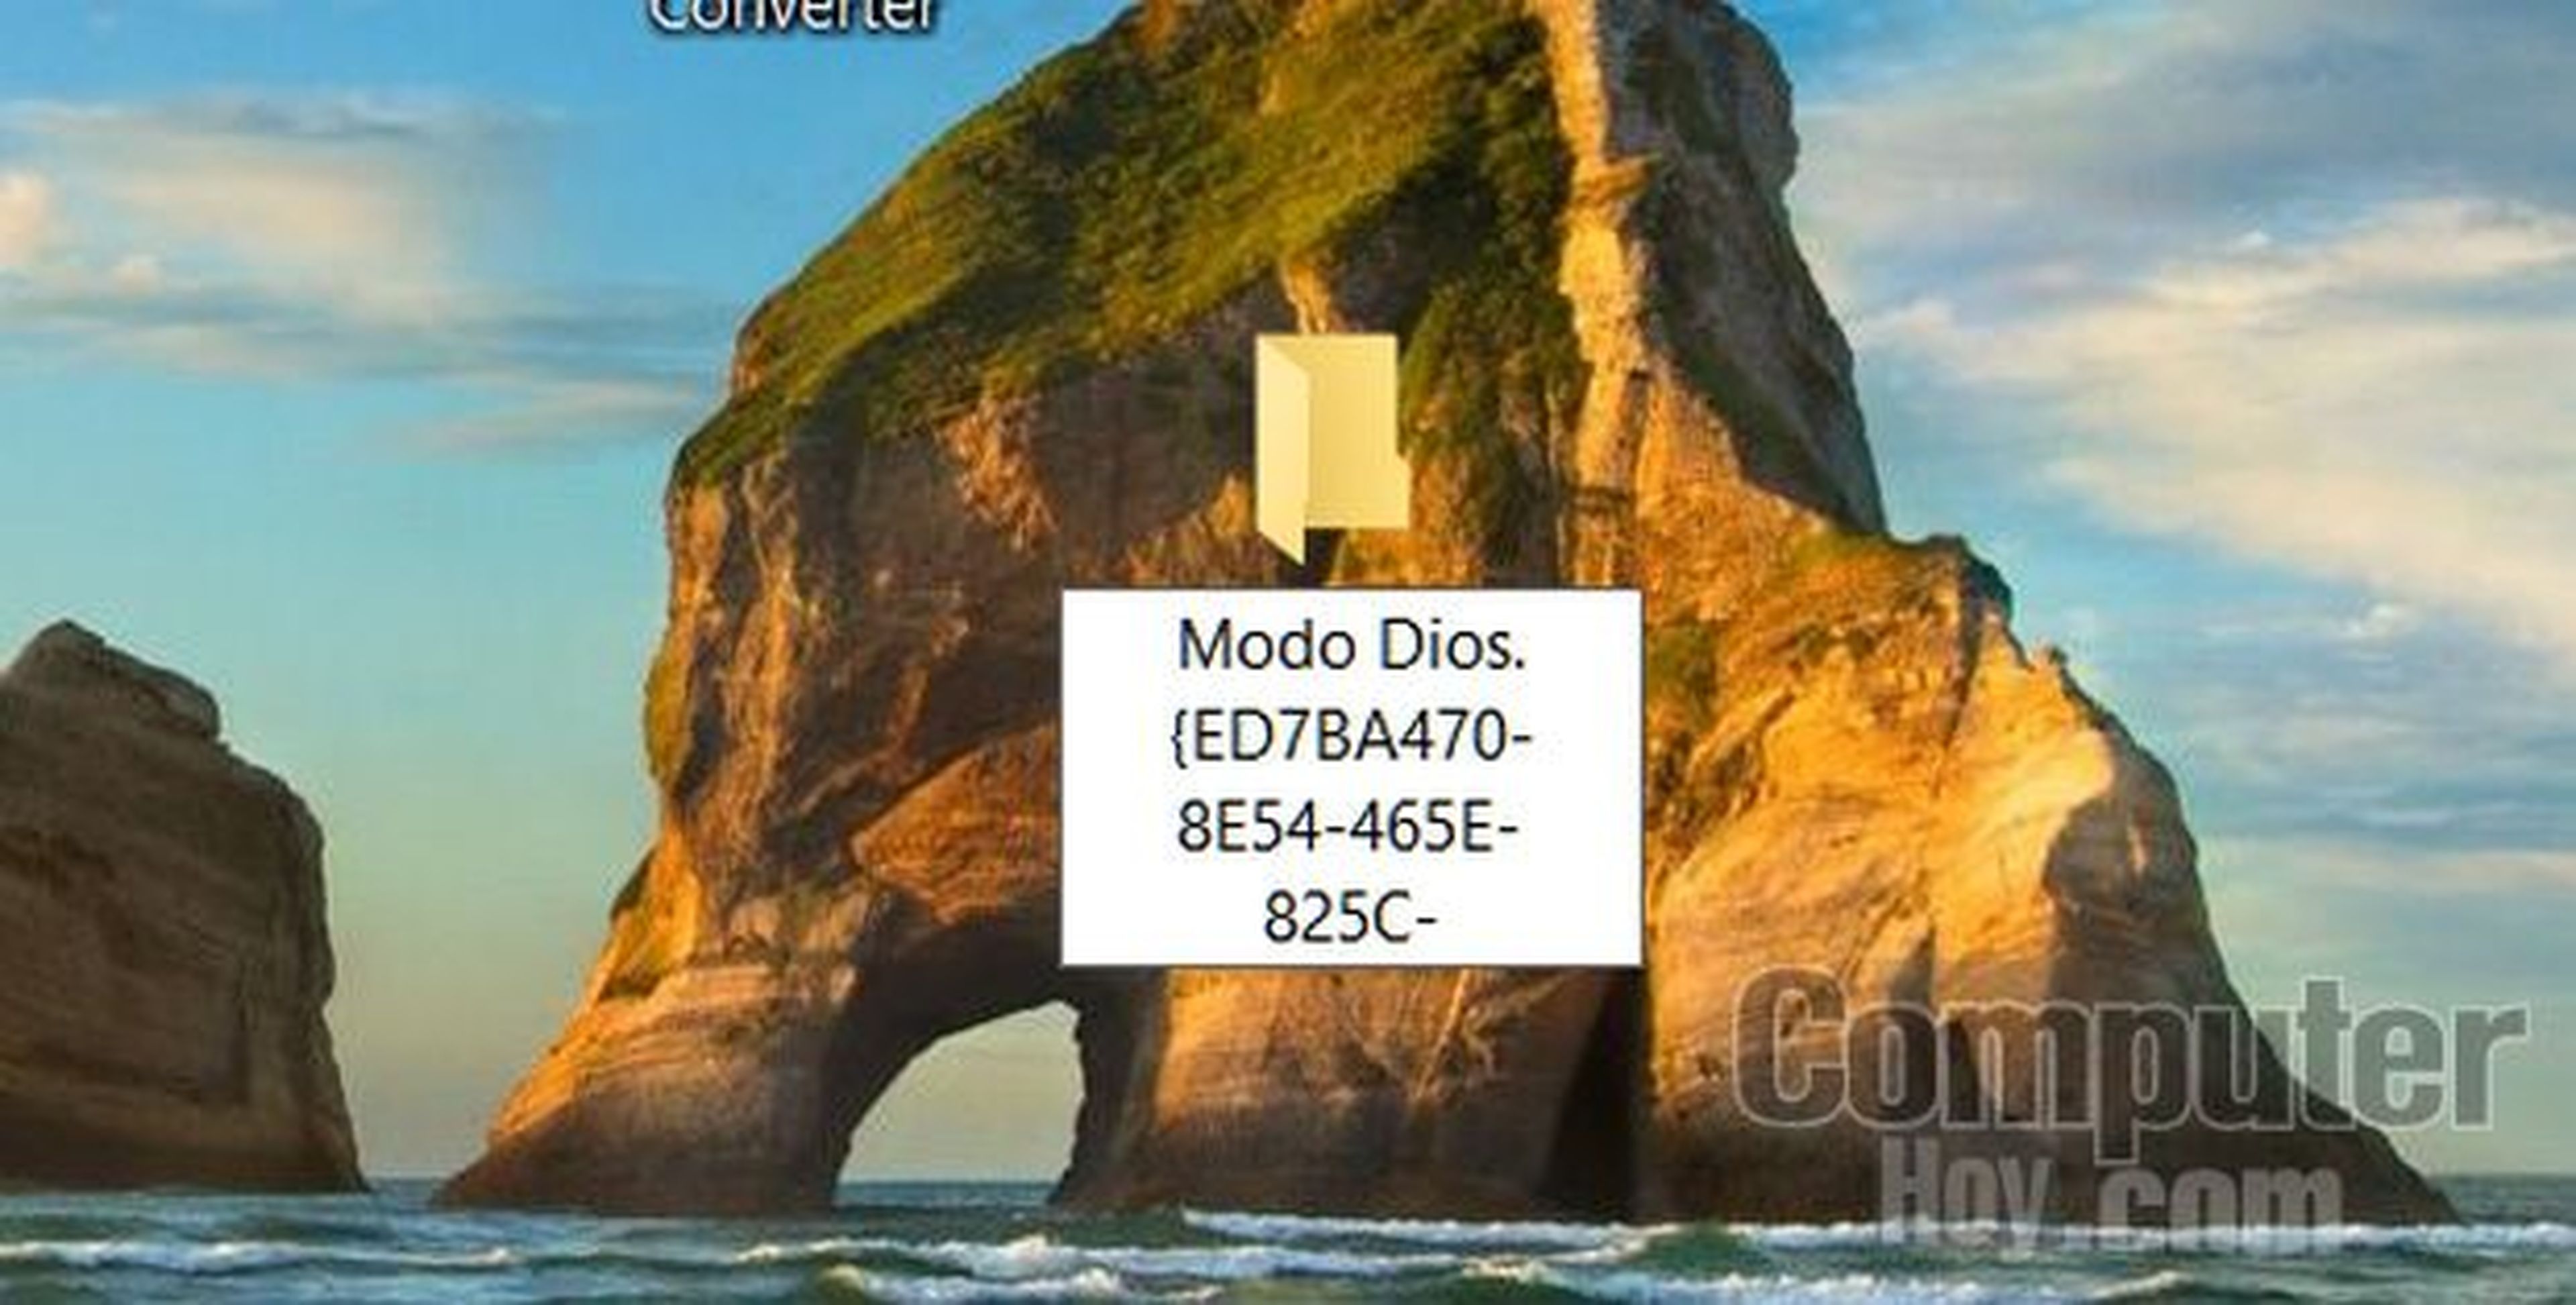 Cómo activar el Modo Dios en Windows 10